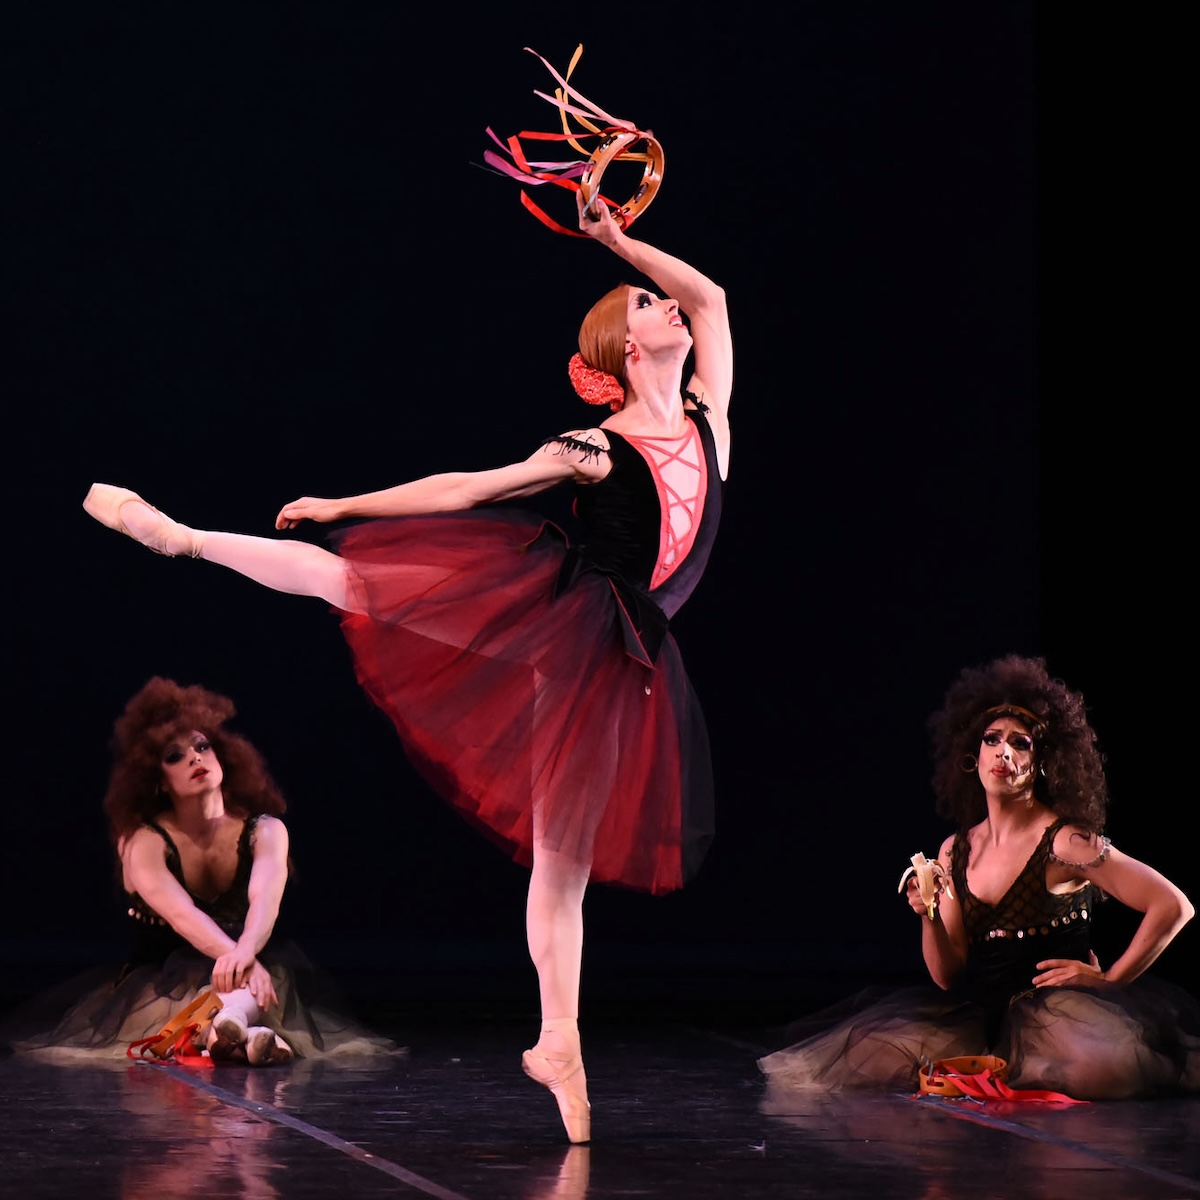 Les Ballets Trockadero de Monte Carlo in Esmeralda. Photo: Roberto Ricci